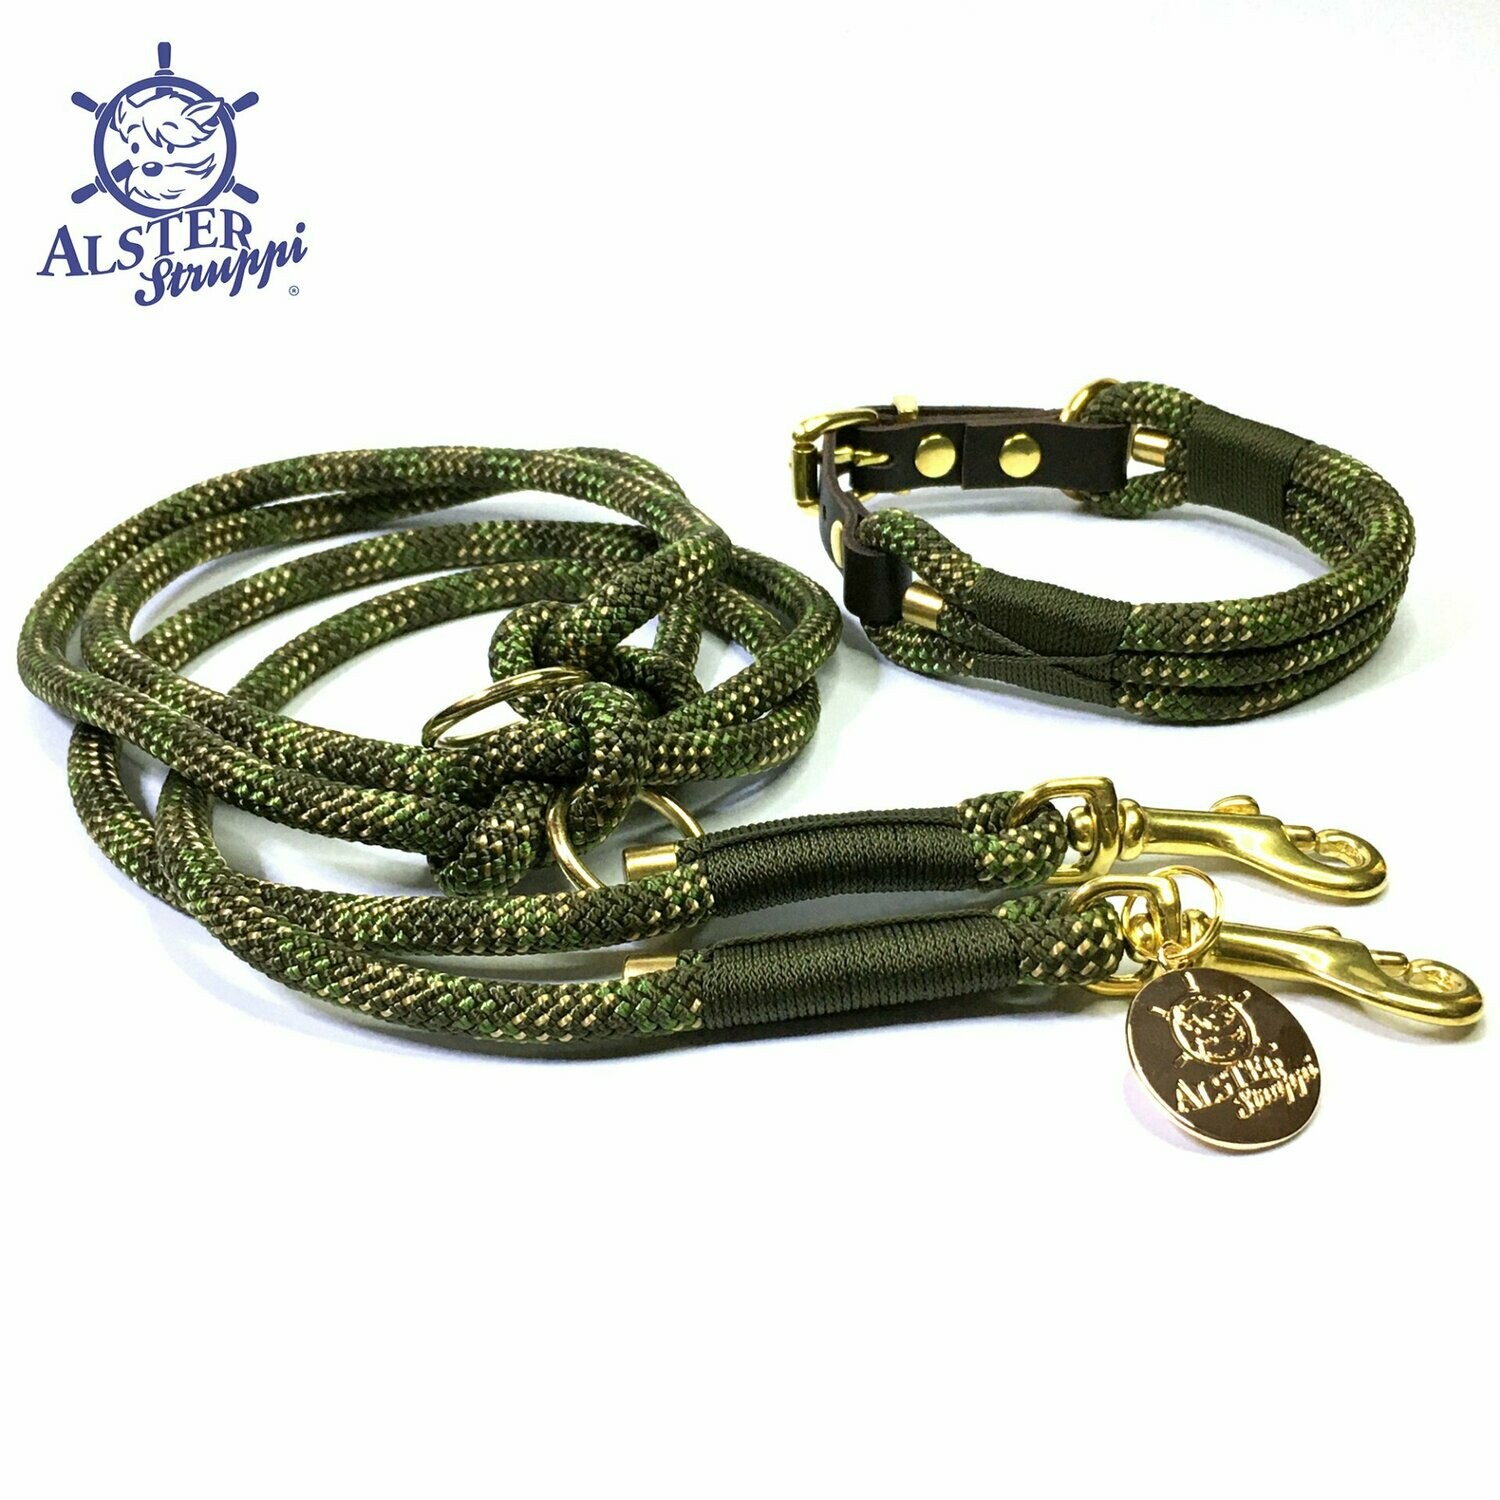 Leine Halsband Set verstellbar, oliv, grün, beige